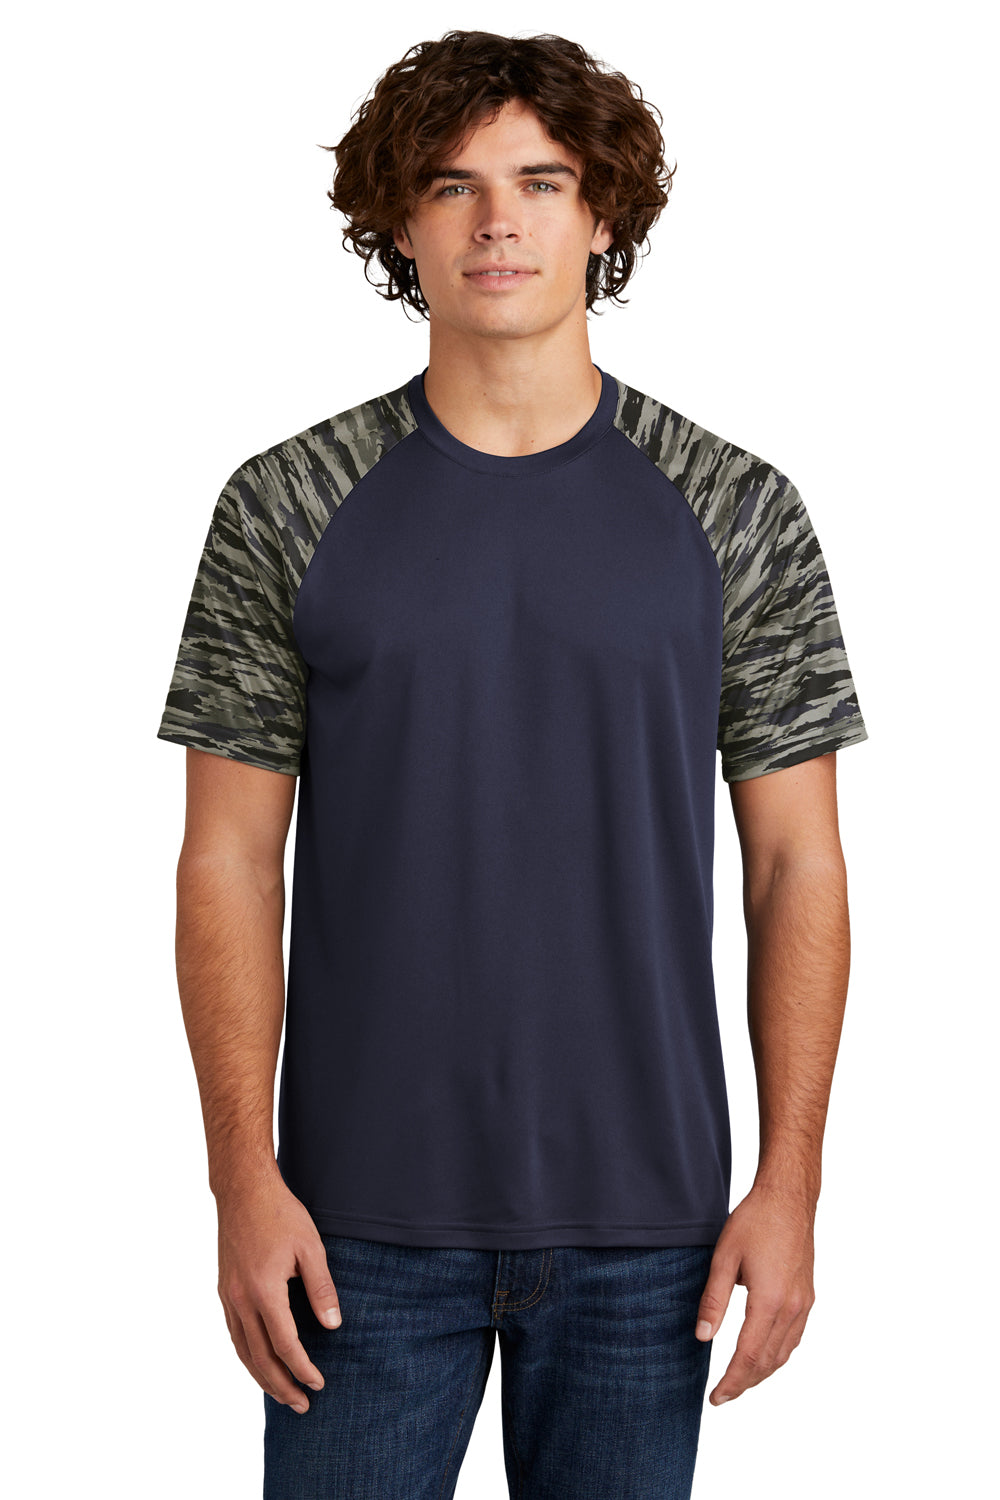 Sport-Tek Mens Drift Camo Colorblock Short Sleeve Crewneck T-Shirt True Navy Blue Front